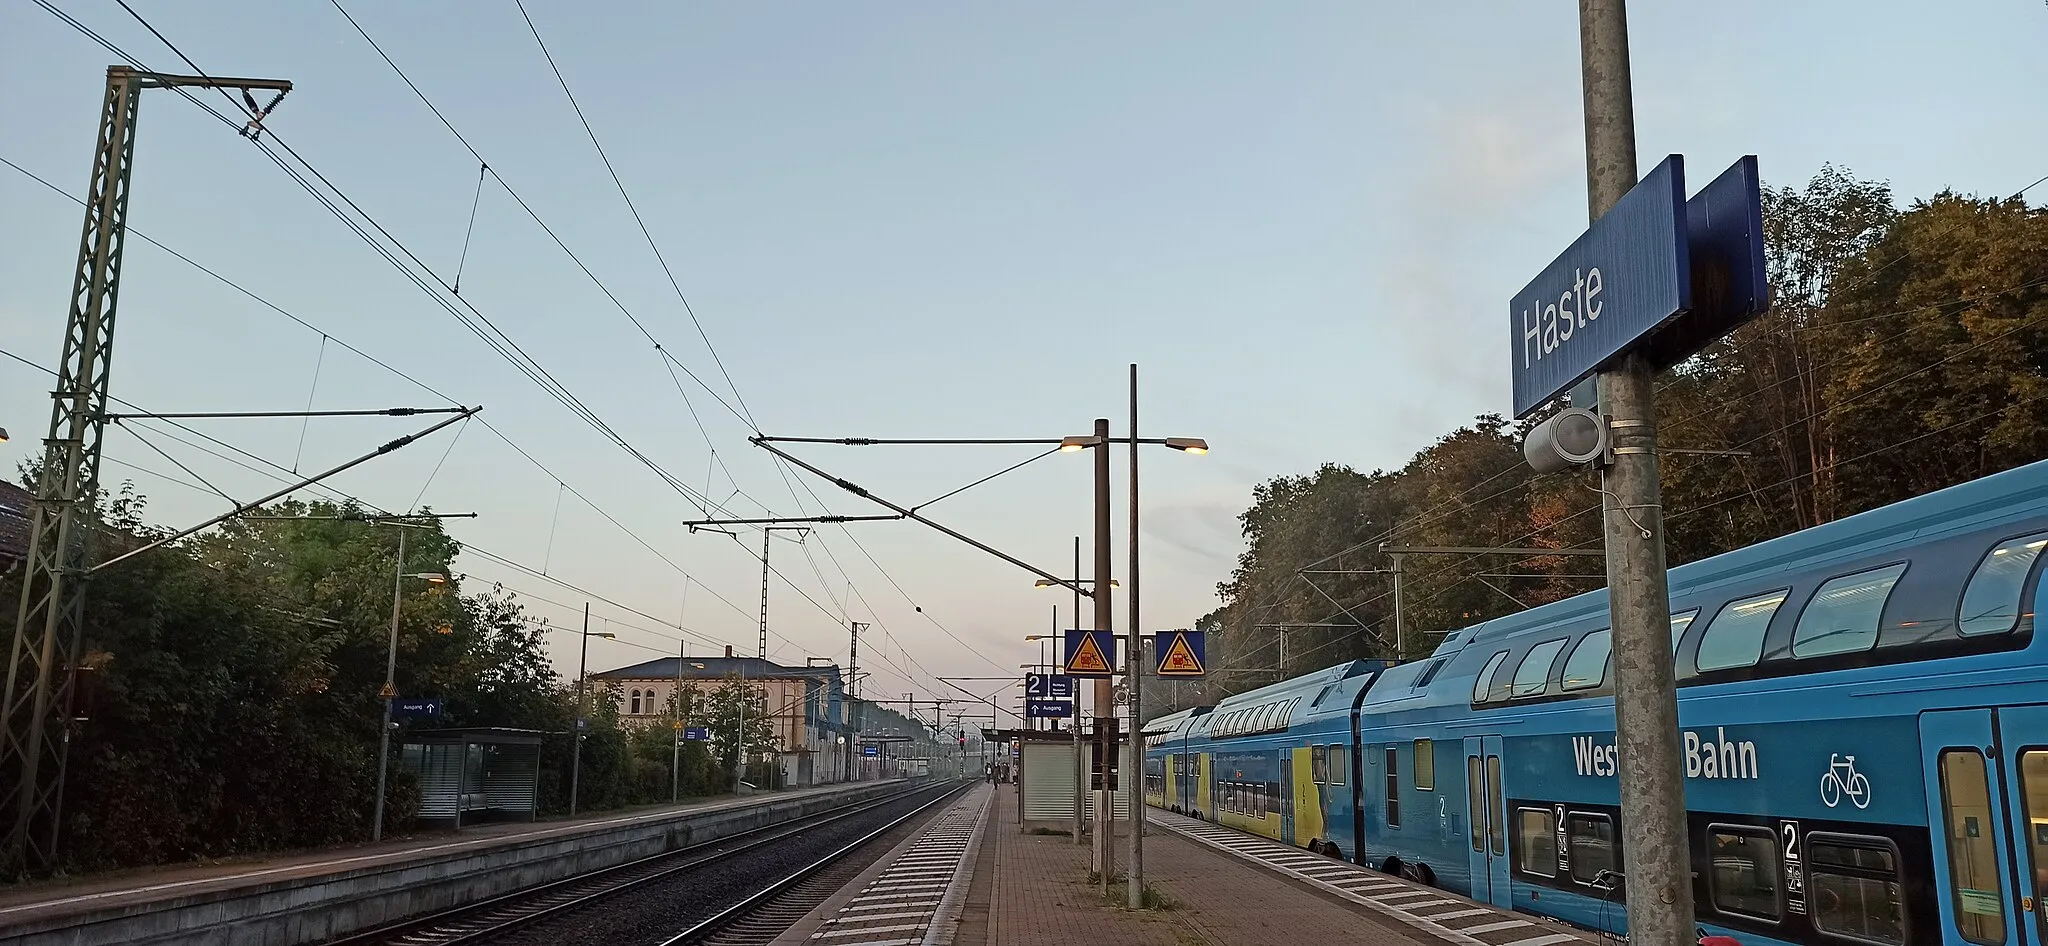 Photo showing: Bahnhof Haste,
Bahnsteig Gleis 2 und 3 an der Bahnstrecke Hannover–Minden,

Taken on 28 September 2021